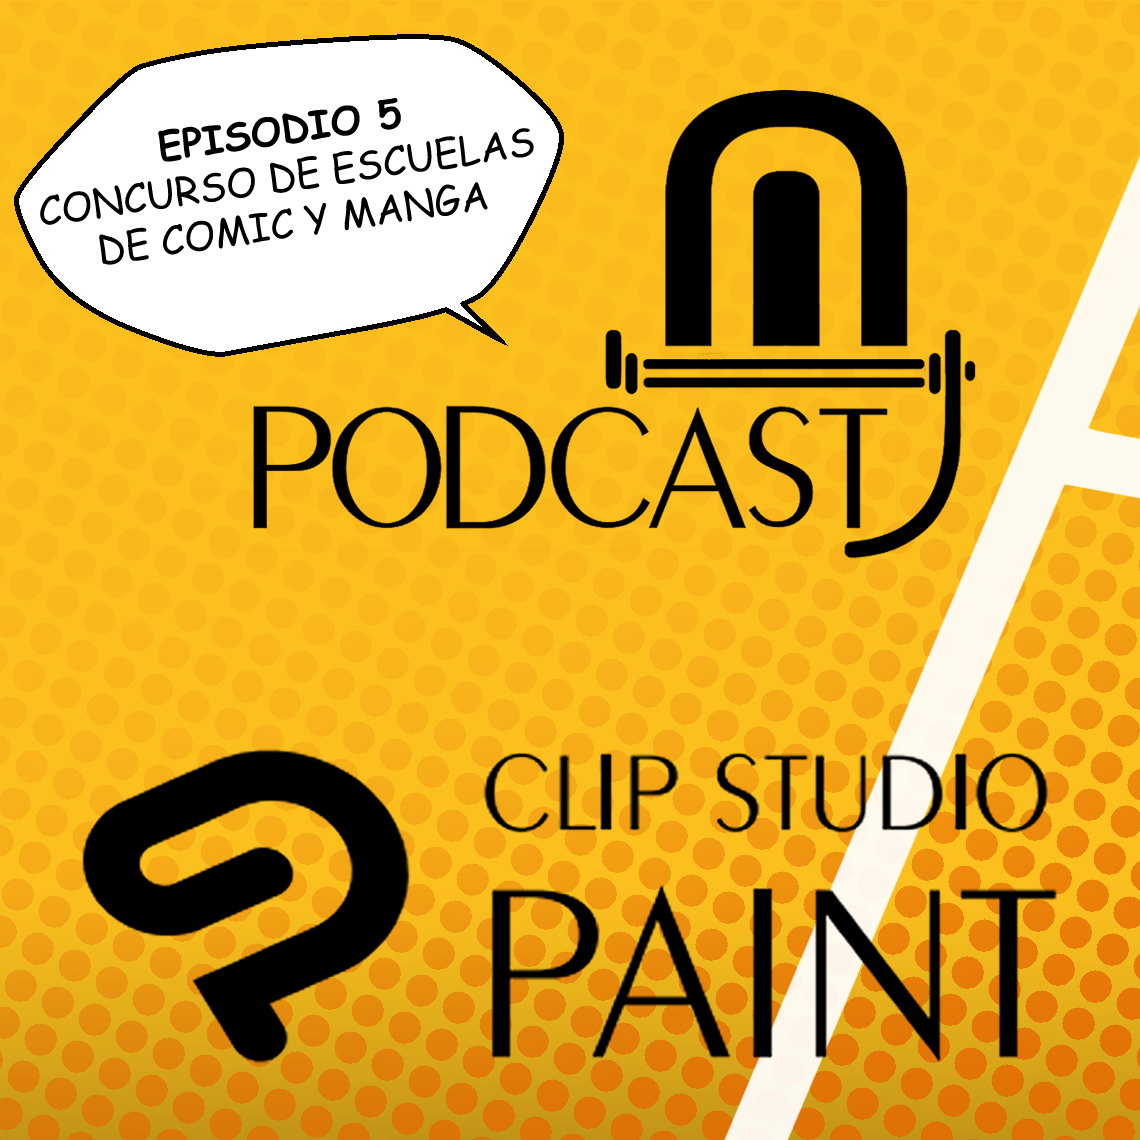 CSP episodio 5. Concurso internacional de escuelas de cómic y manga